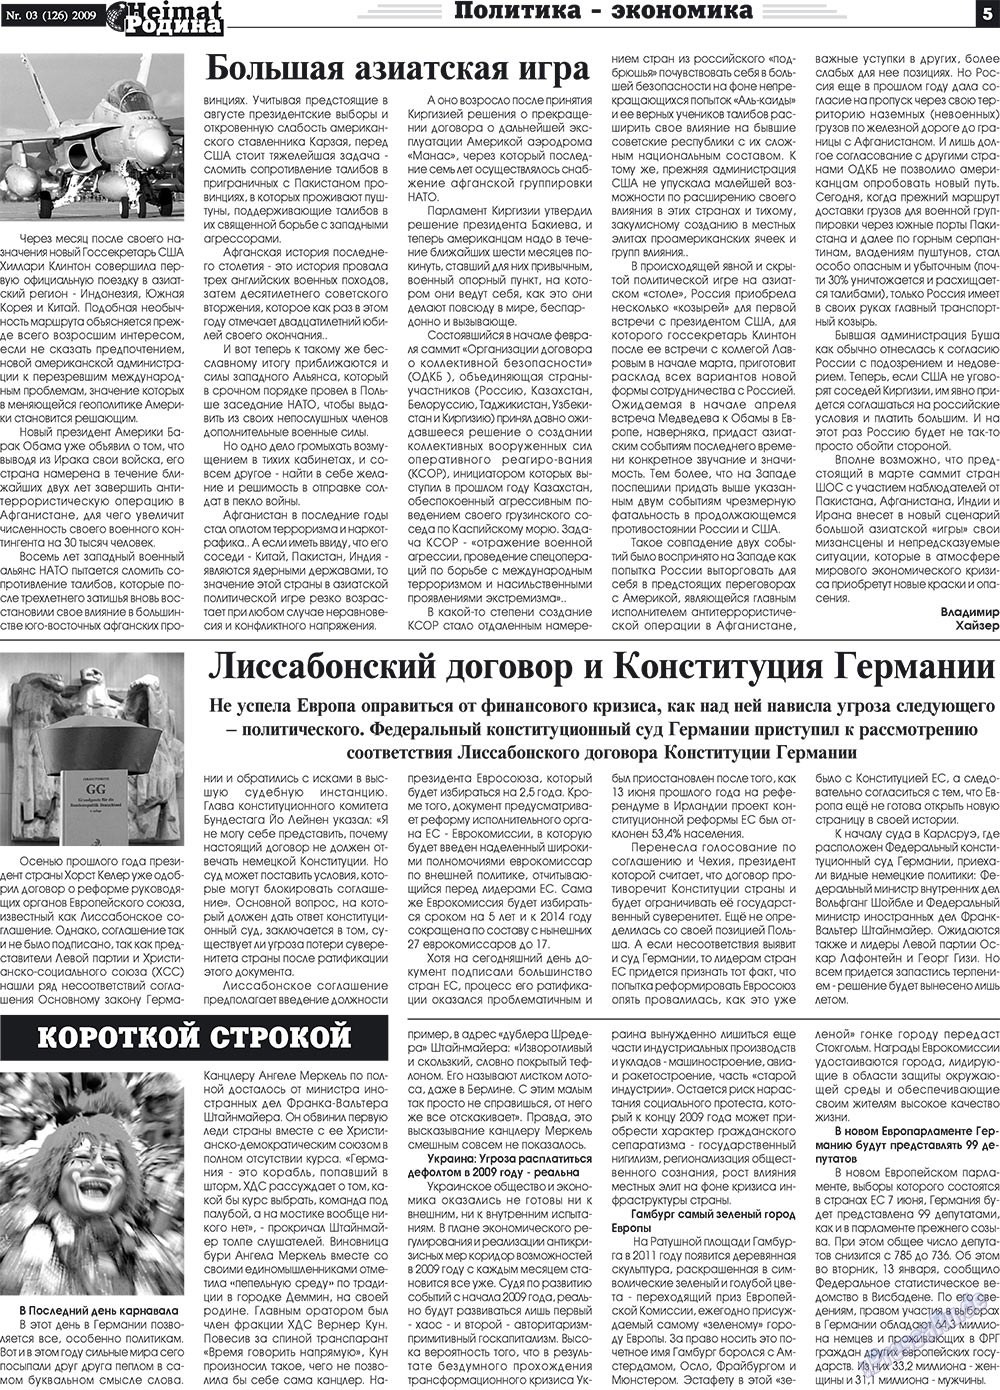 Heimat-Родина (газета). 2009 год, номер 3, стр. 5